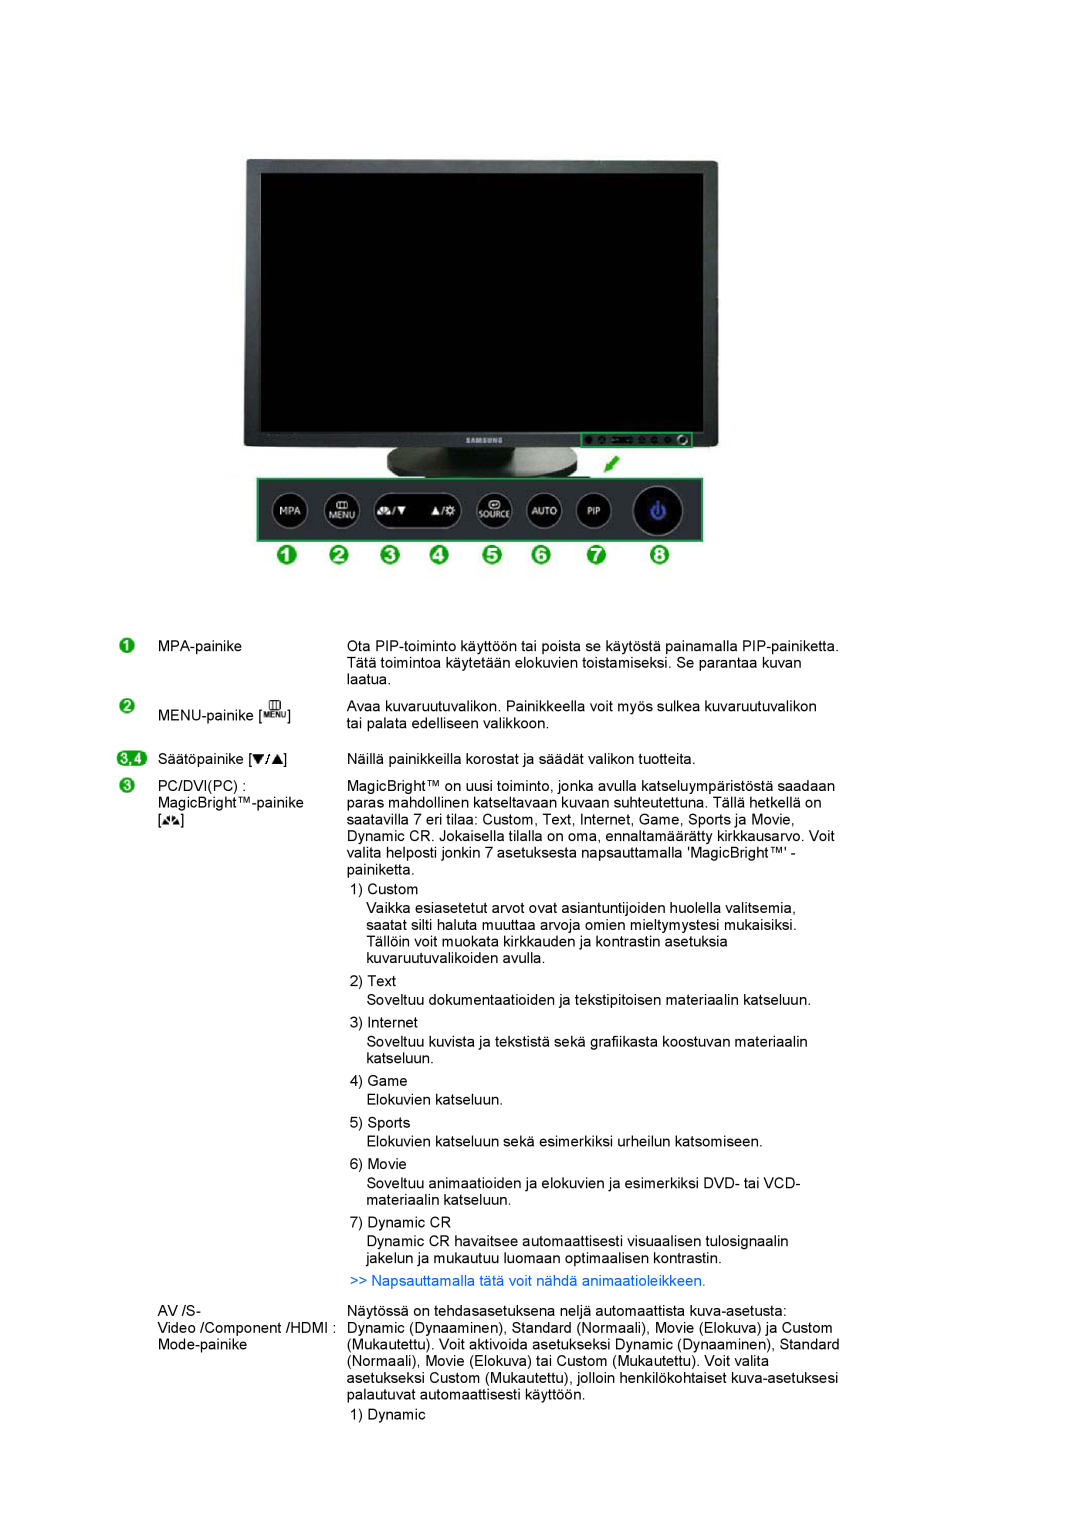 Samsung LS24HUCEBQ/EDC manual MPA-painike, Napsauttamalla tätä voit nähdä animaatioleikkeen 